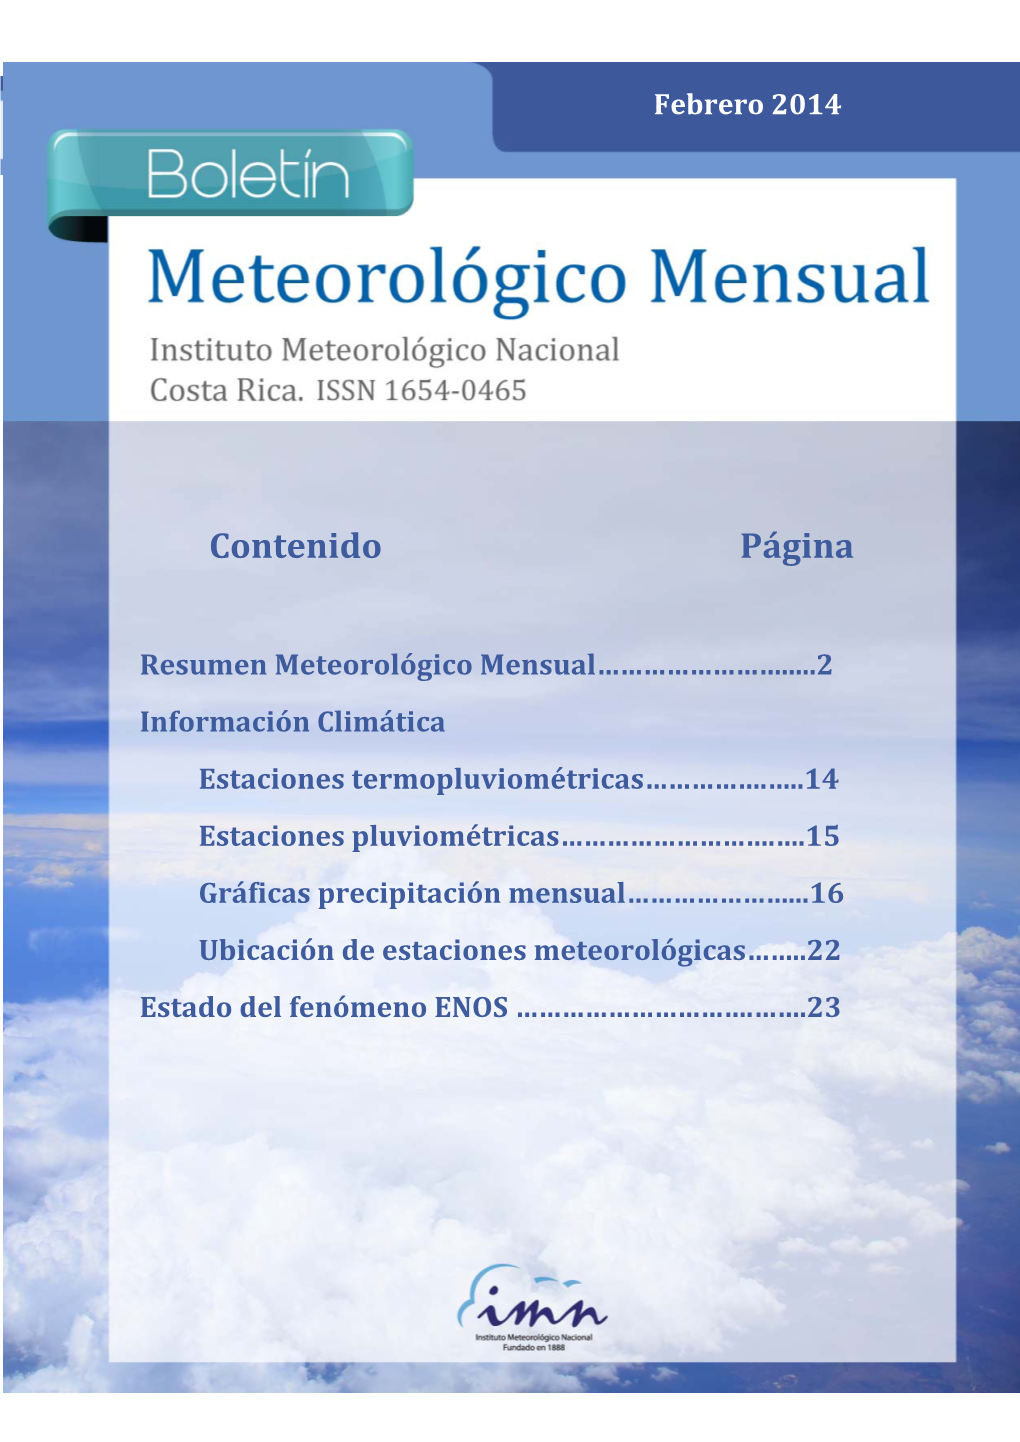 Febrero Meteorológico 2014 Mensual 1 Estaciones Termopluviométricas Febrero 2014